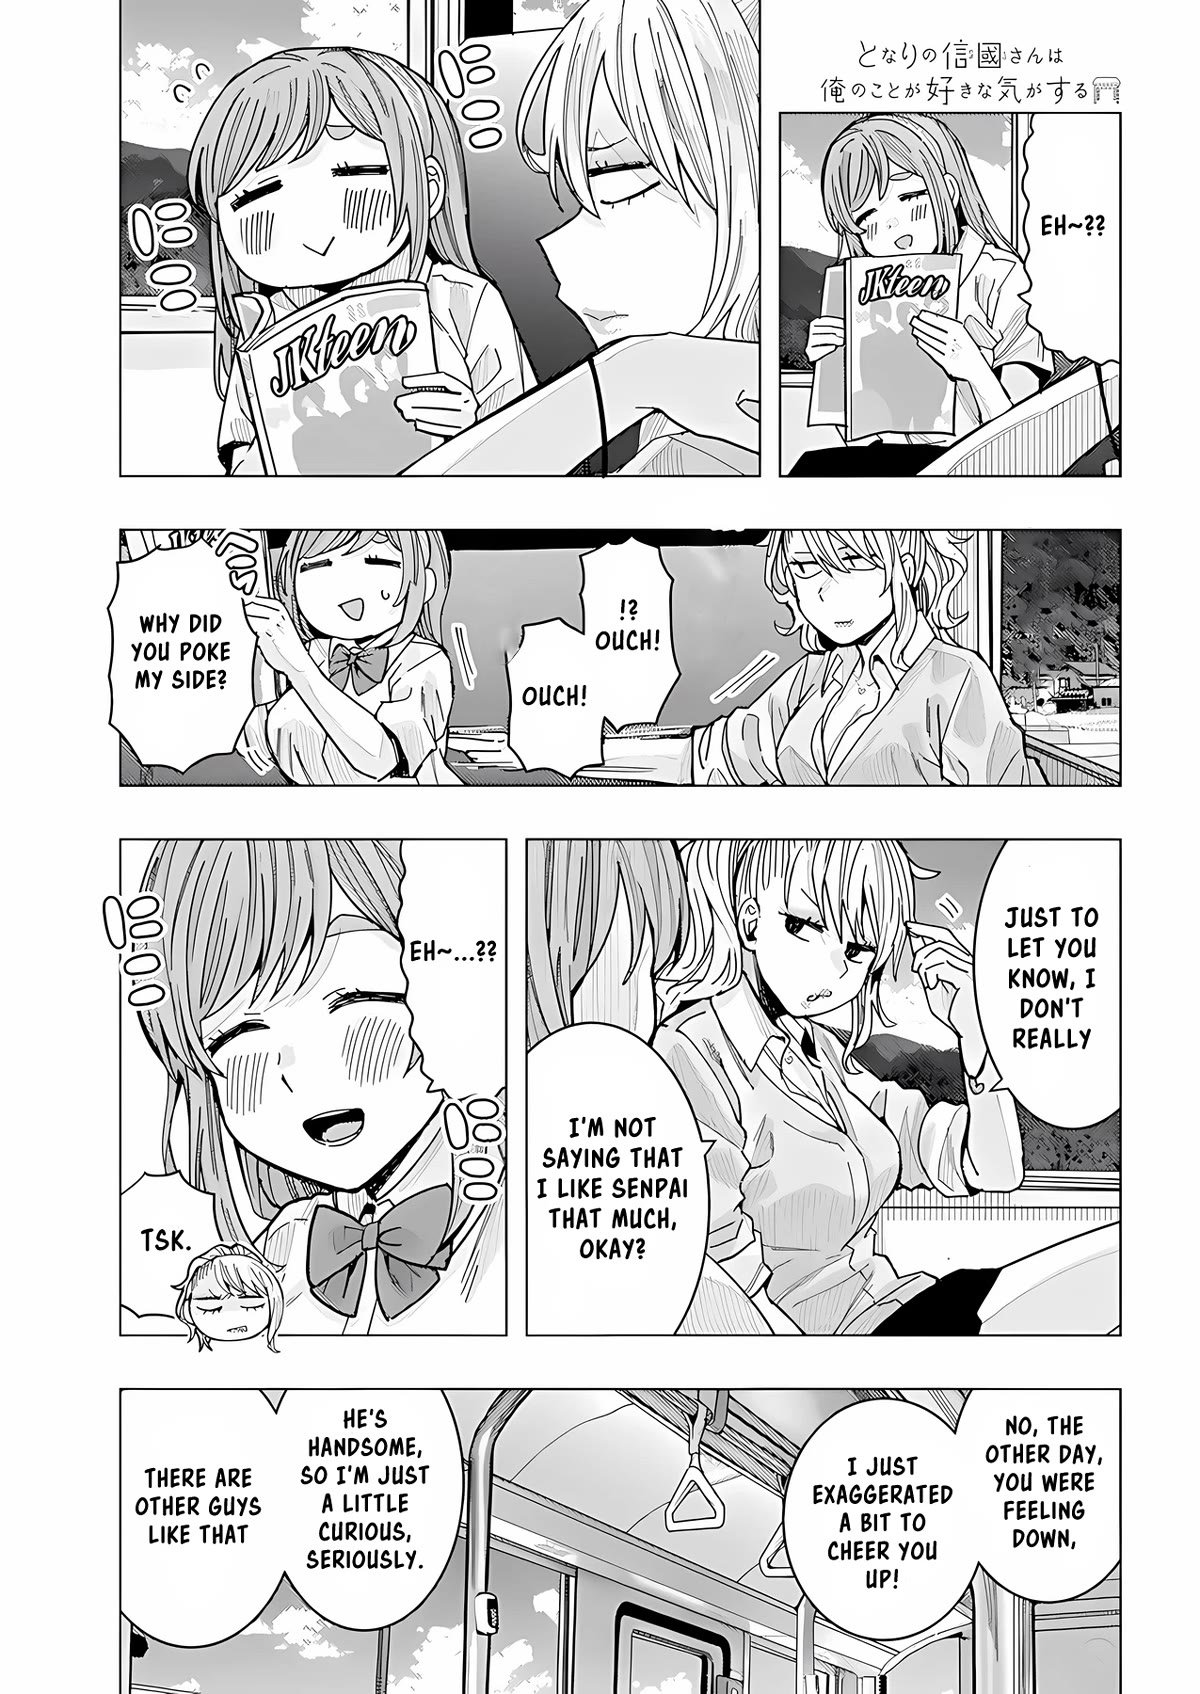 "nobukuni-San" Does She Like Me? Chapter 25 #4